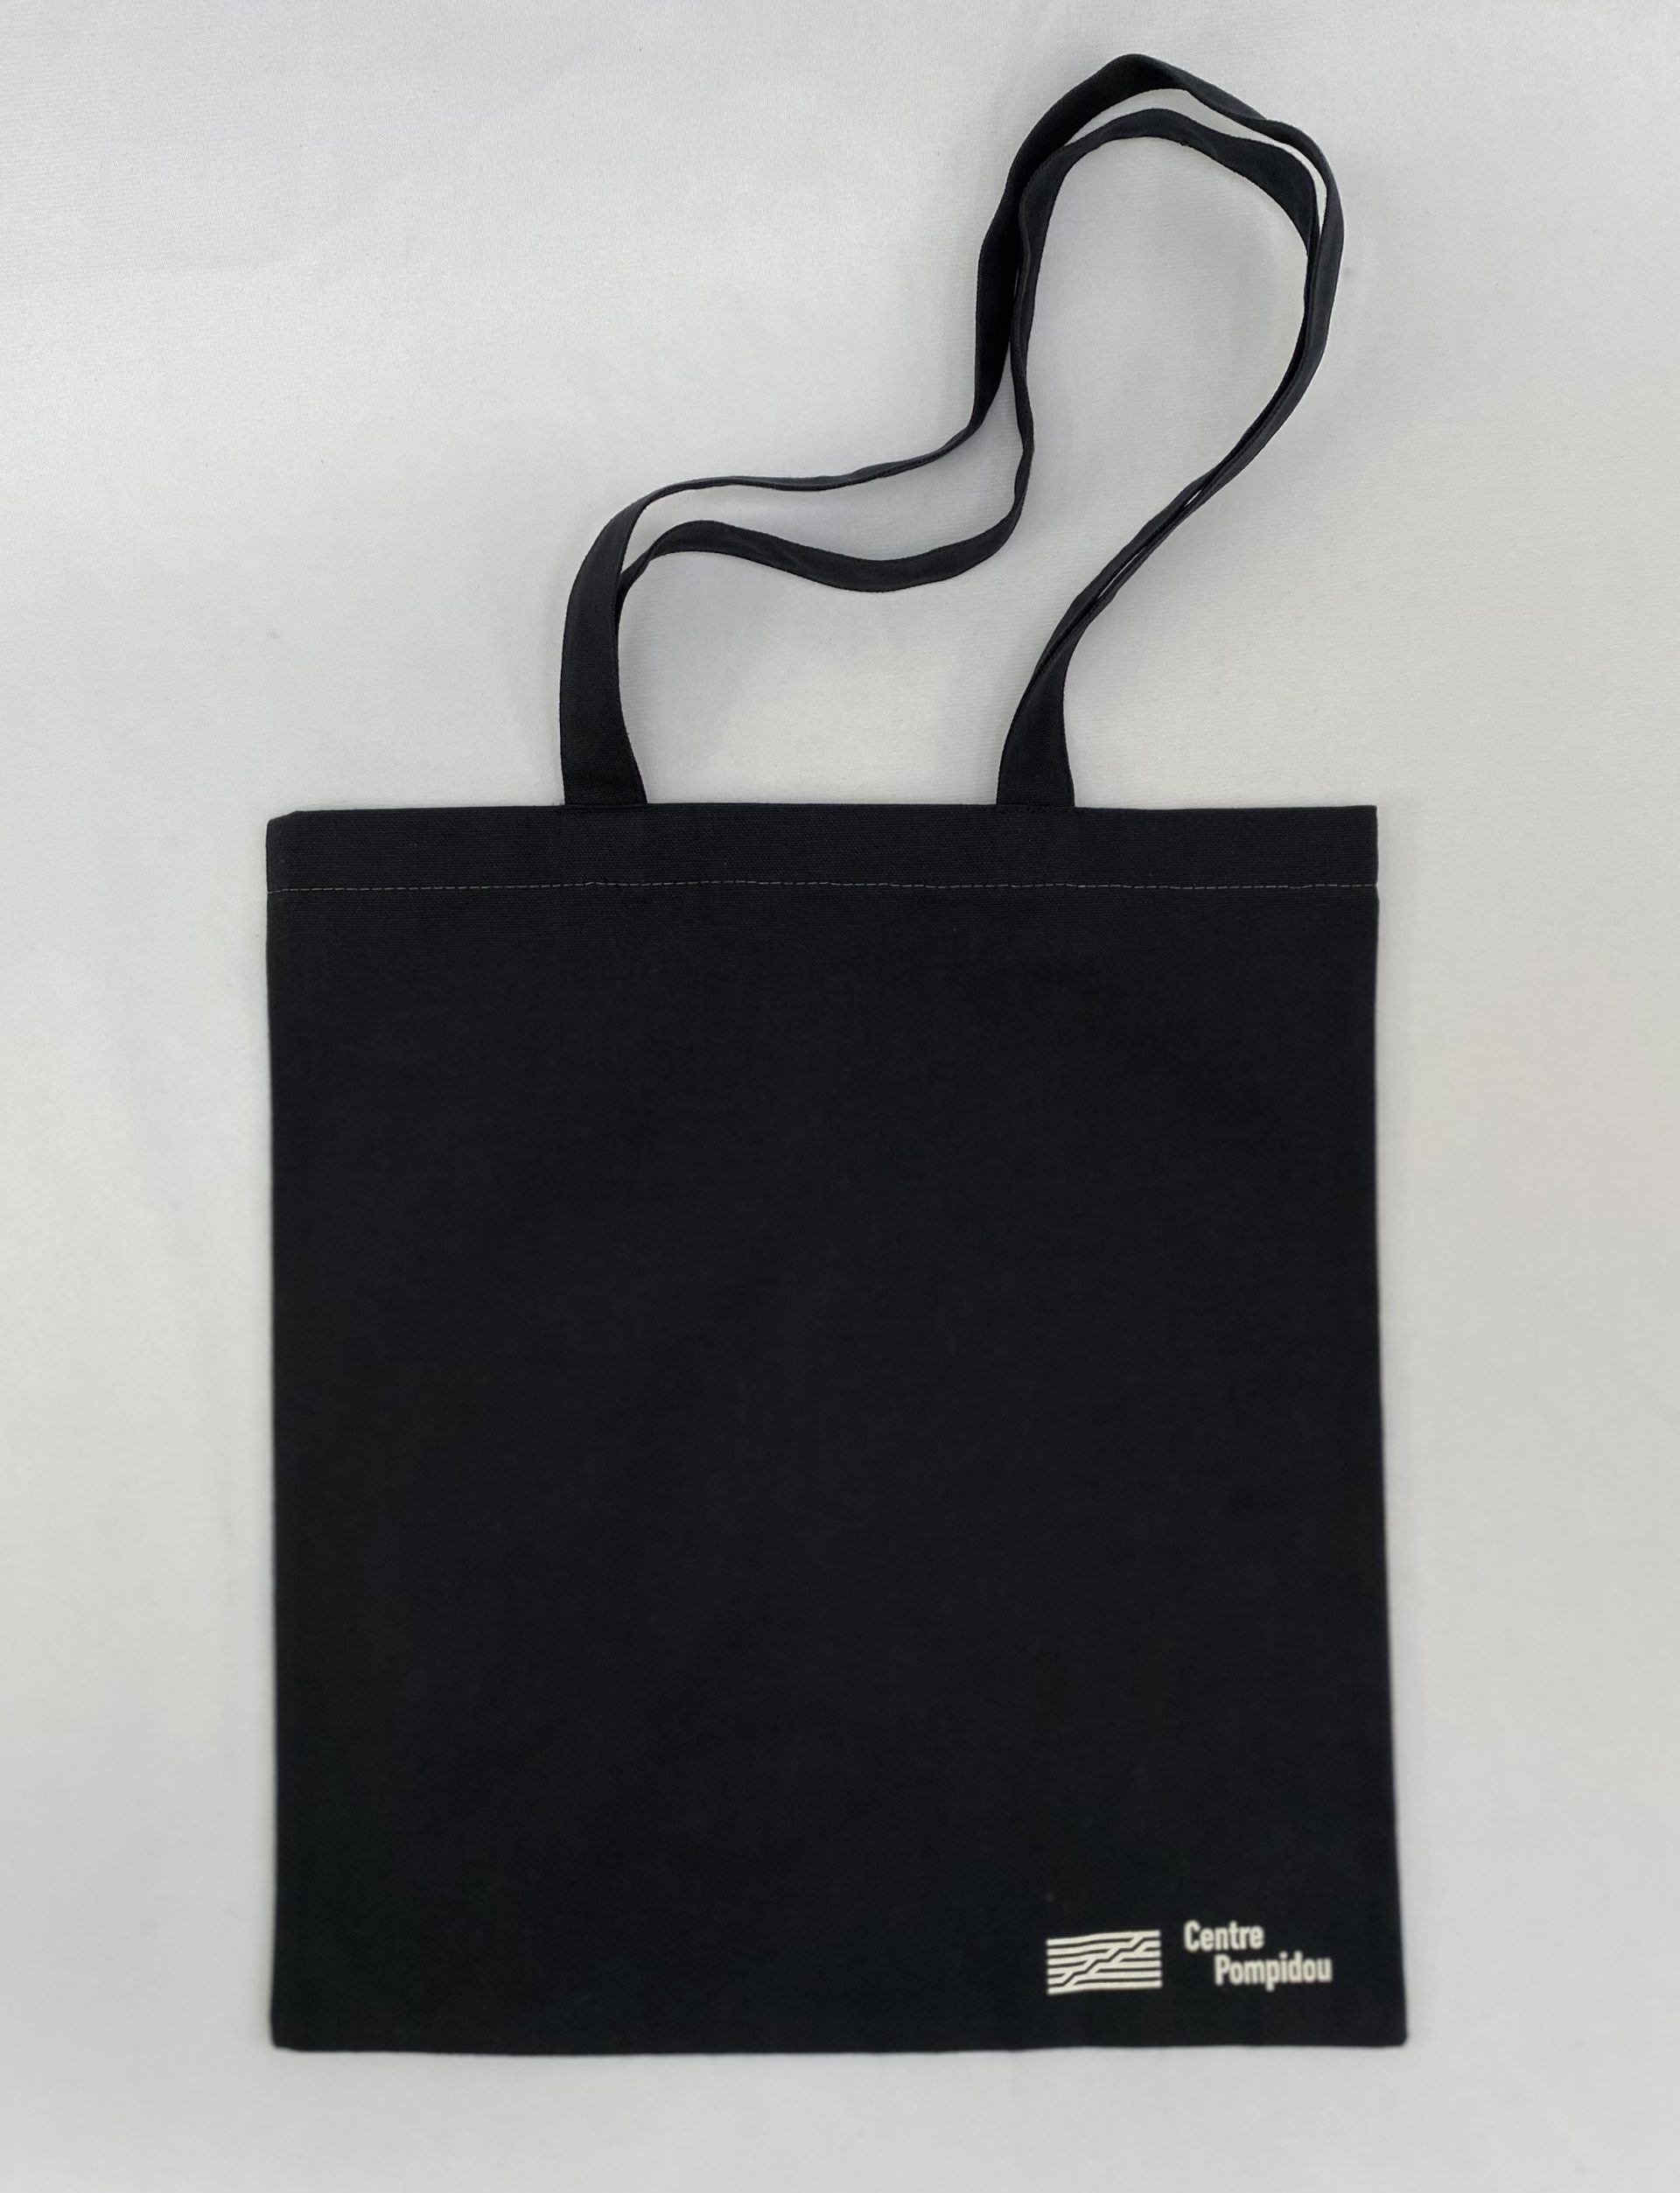 Centre Pompidou of Renzo Pianos printed tote bag